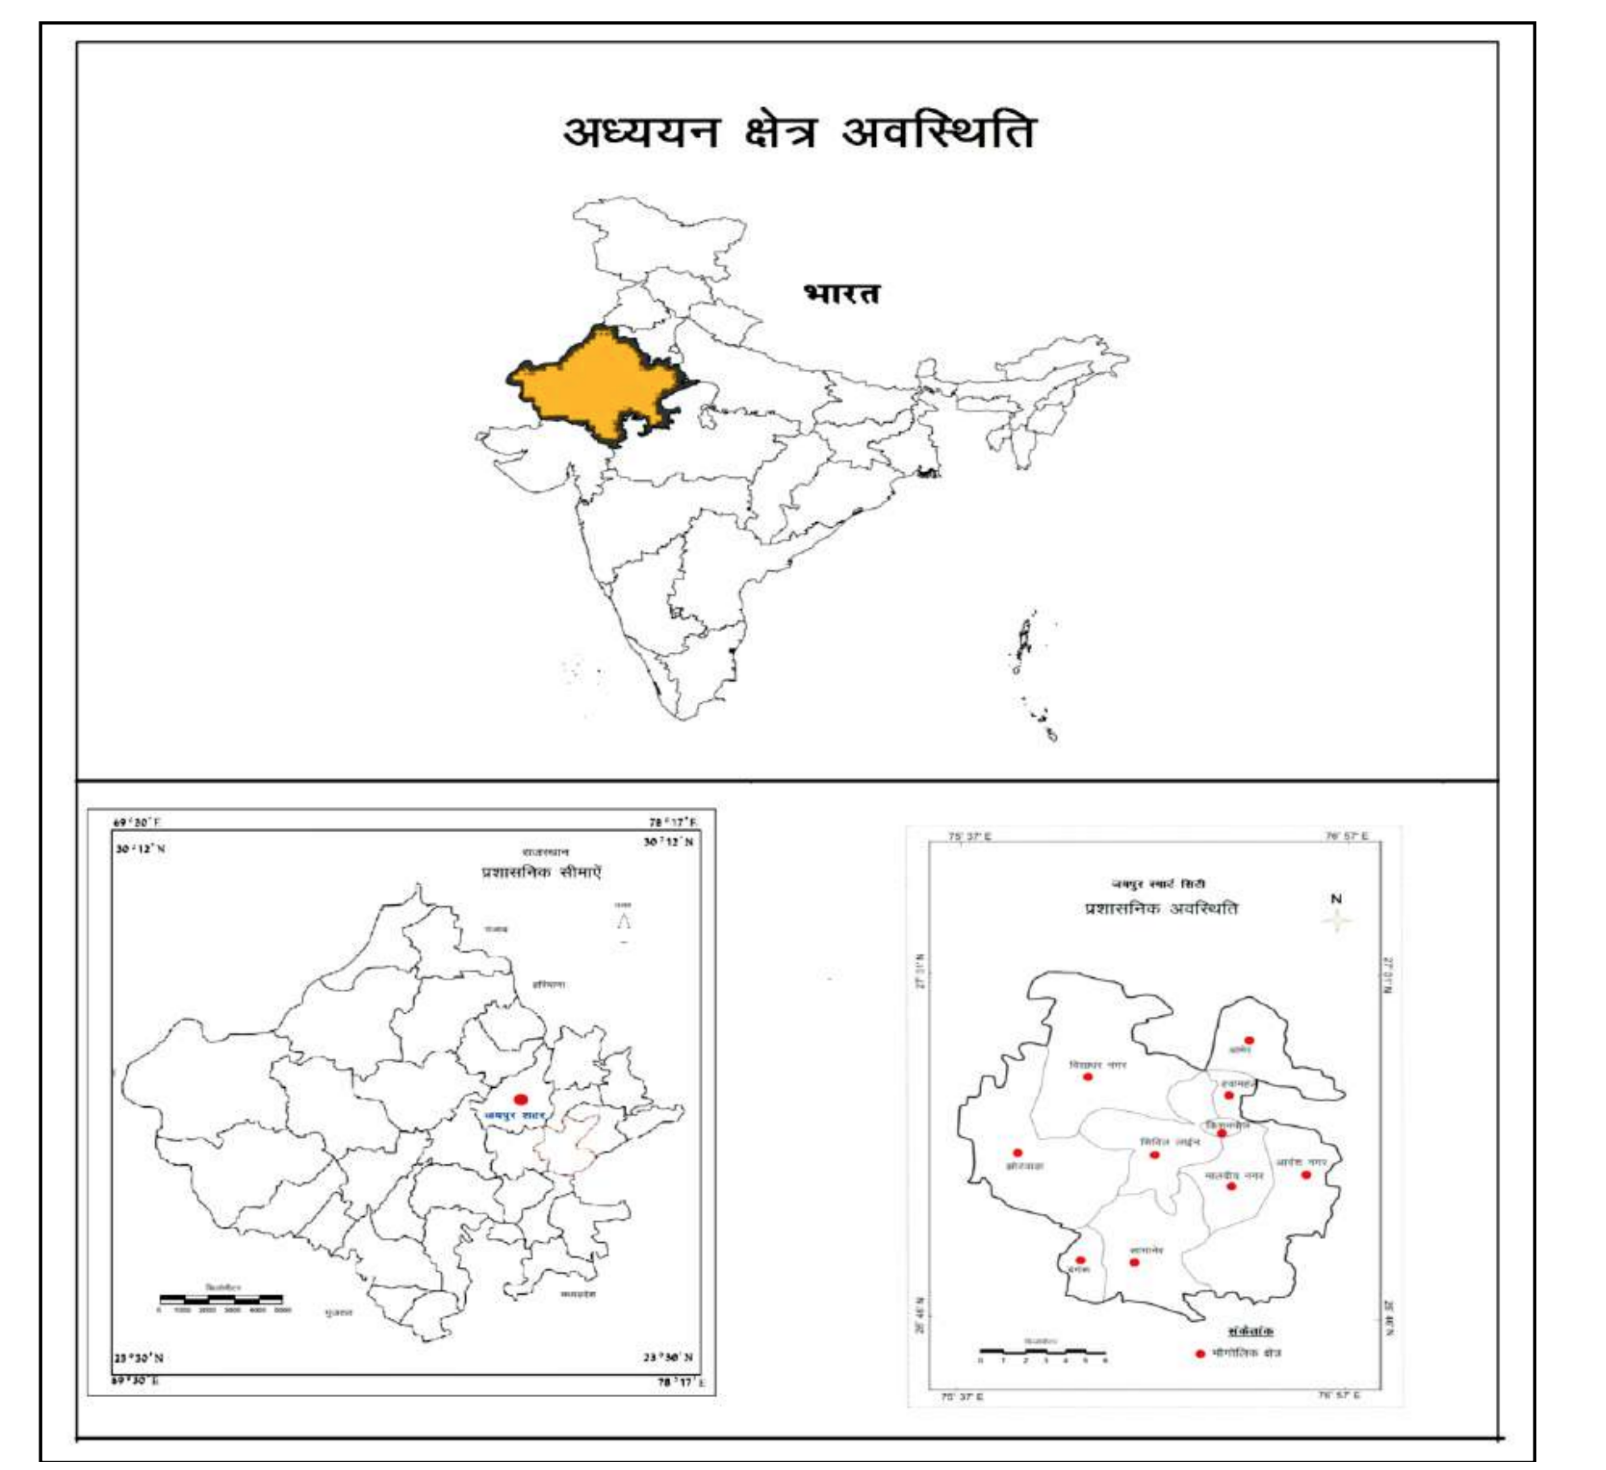 मानचित्र 1: जयपुर स्मार्ट सिटी की अवस्थिति